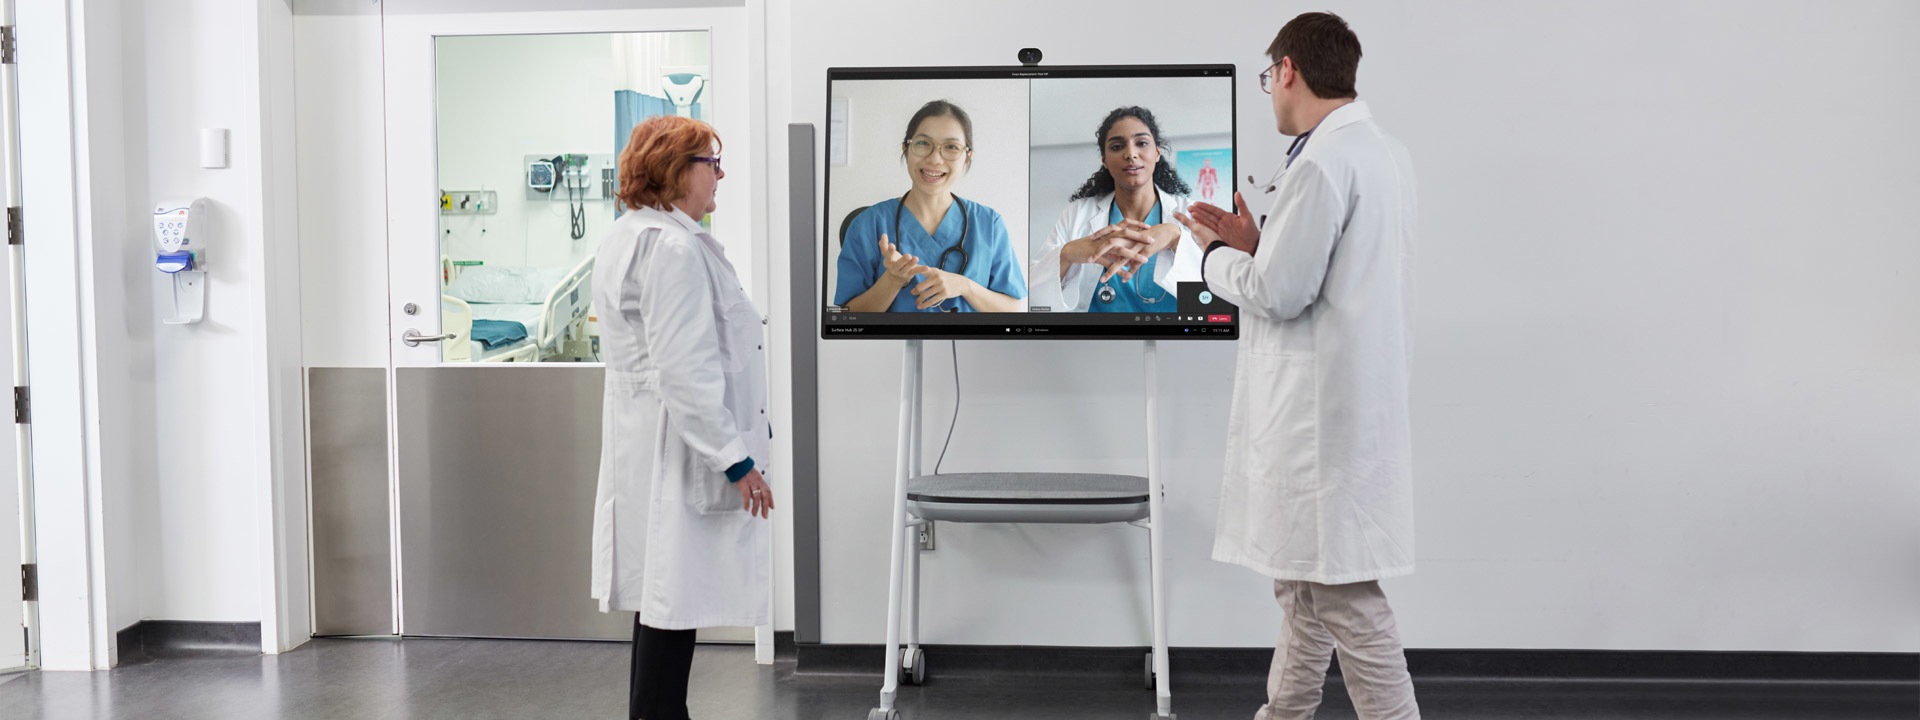 طبيبان مختصان يتشاركان في مكالمة فيديو عبر Teams في أحد المستشفيات